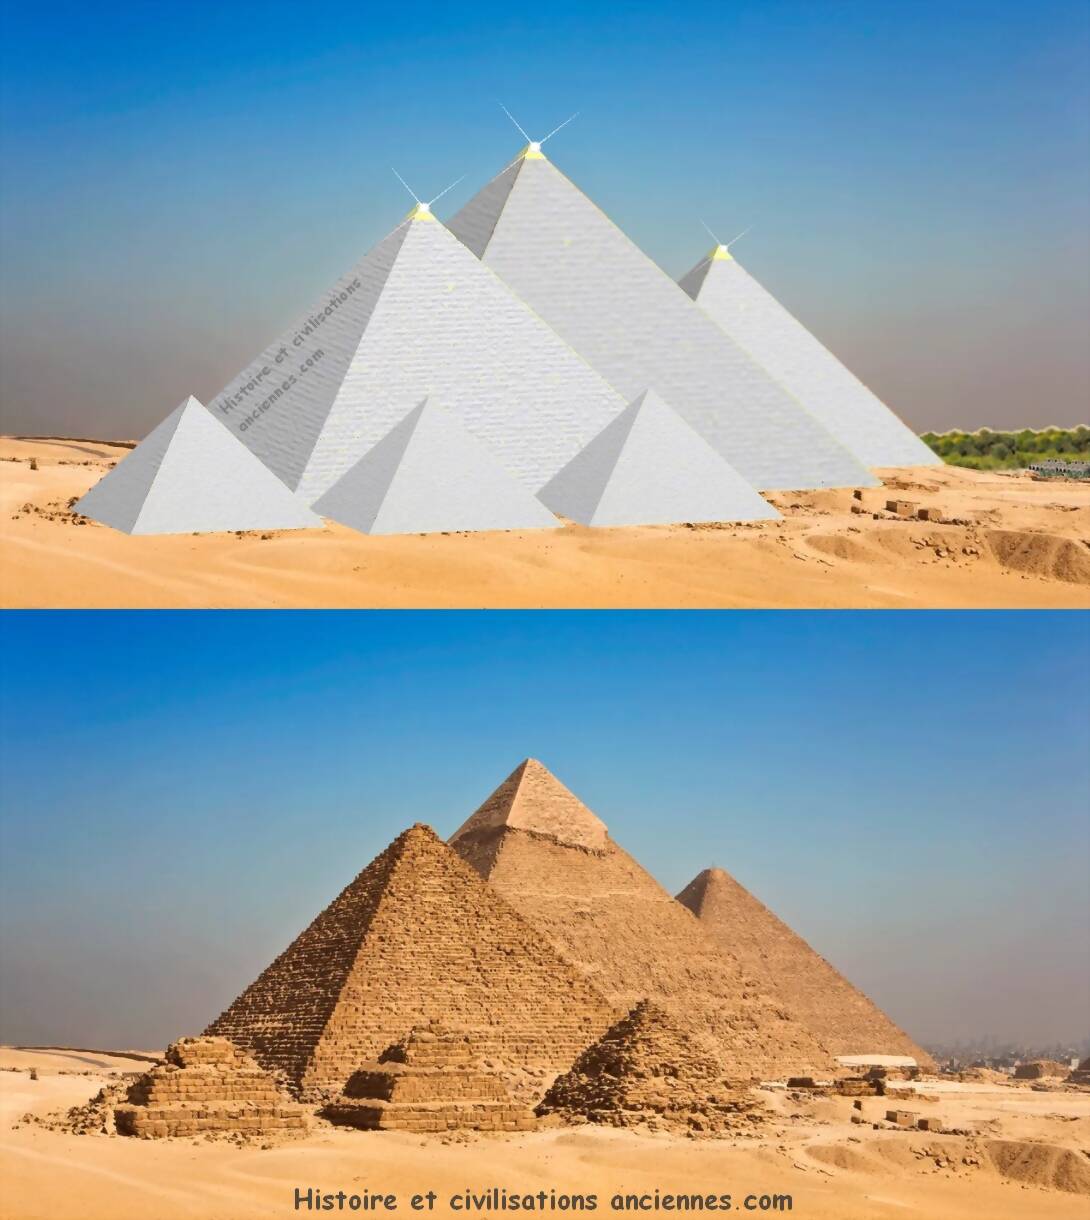 http://histoire-et-civilisations-anciennes.blog/wp-content/uploads/2020/08/Reconstitution-des-pyramides-de-Gizeh.-signee.jpg